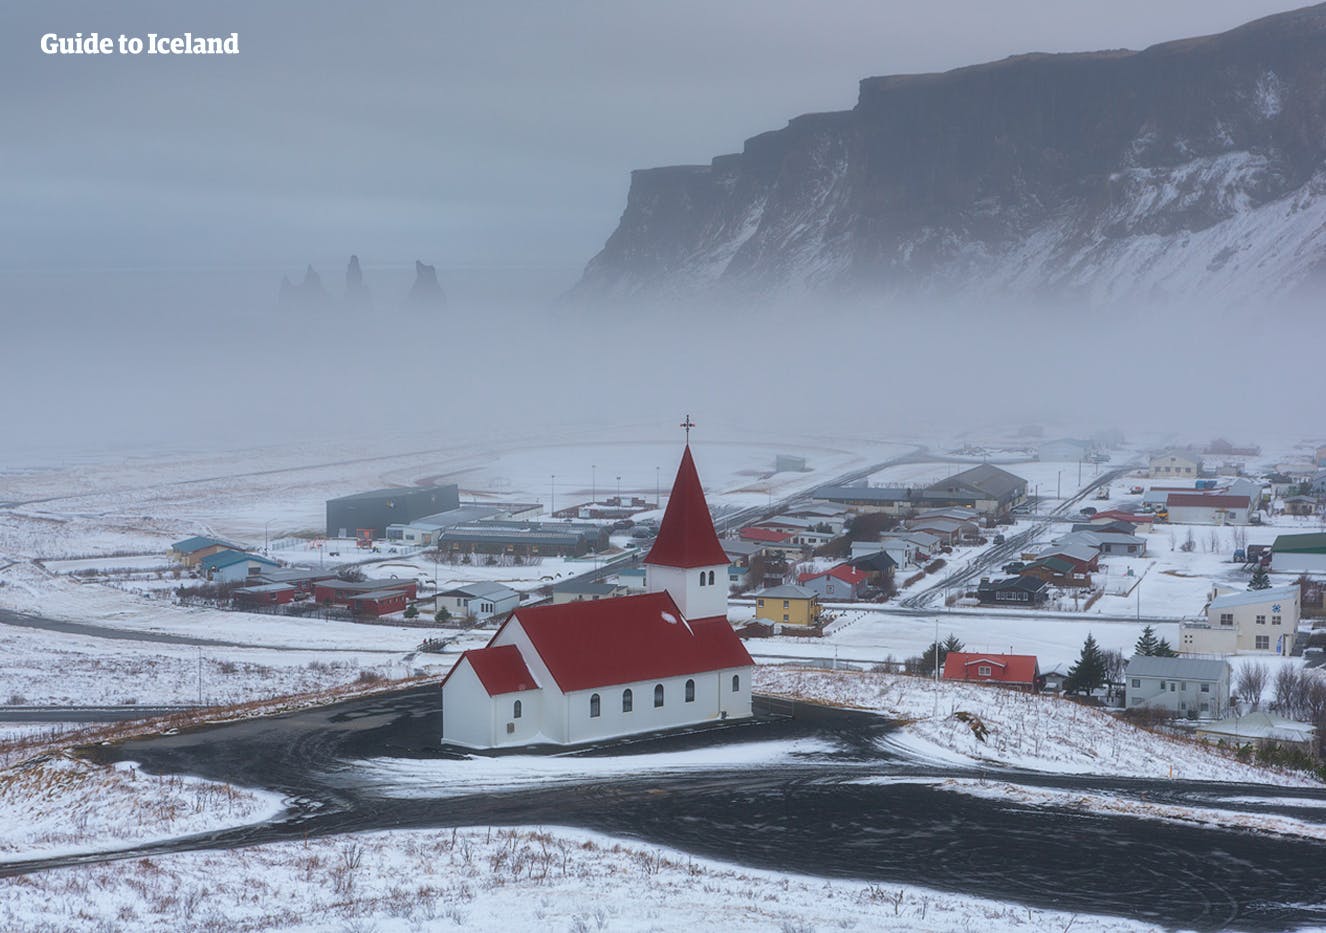 Miasteczko rybackie Vik to popularne miejsce na południowym wybrzeżu Islandii. Możesz tam poczekać na zorzę polarną w nocy.